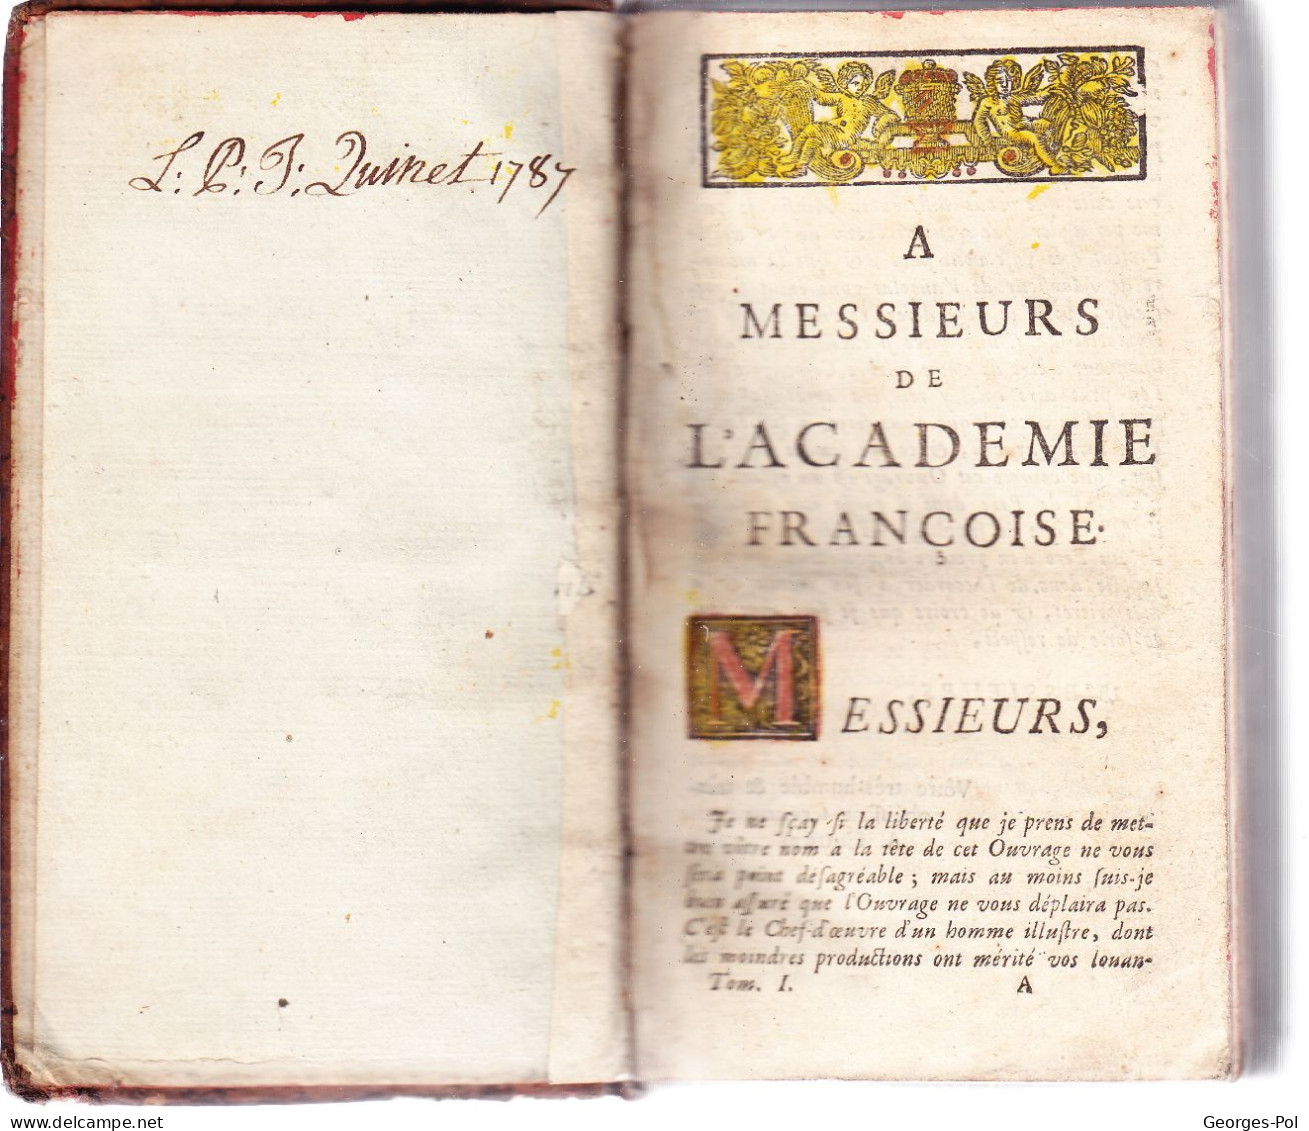 QUINTE-CURCE. 2 TOMES : Alexandre Le Grand, En Latin, Avec Traduction Française De M. De Vaugelas. (probablement 1680) - Before 18th Century